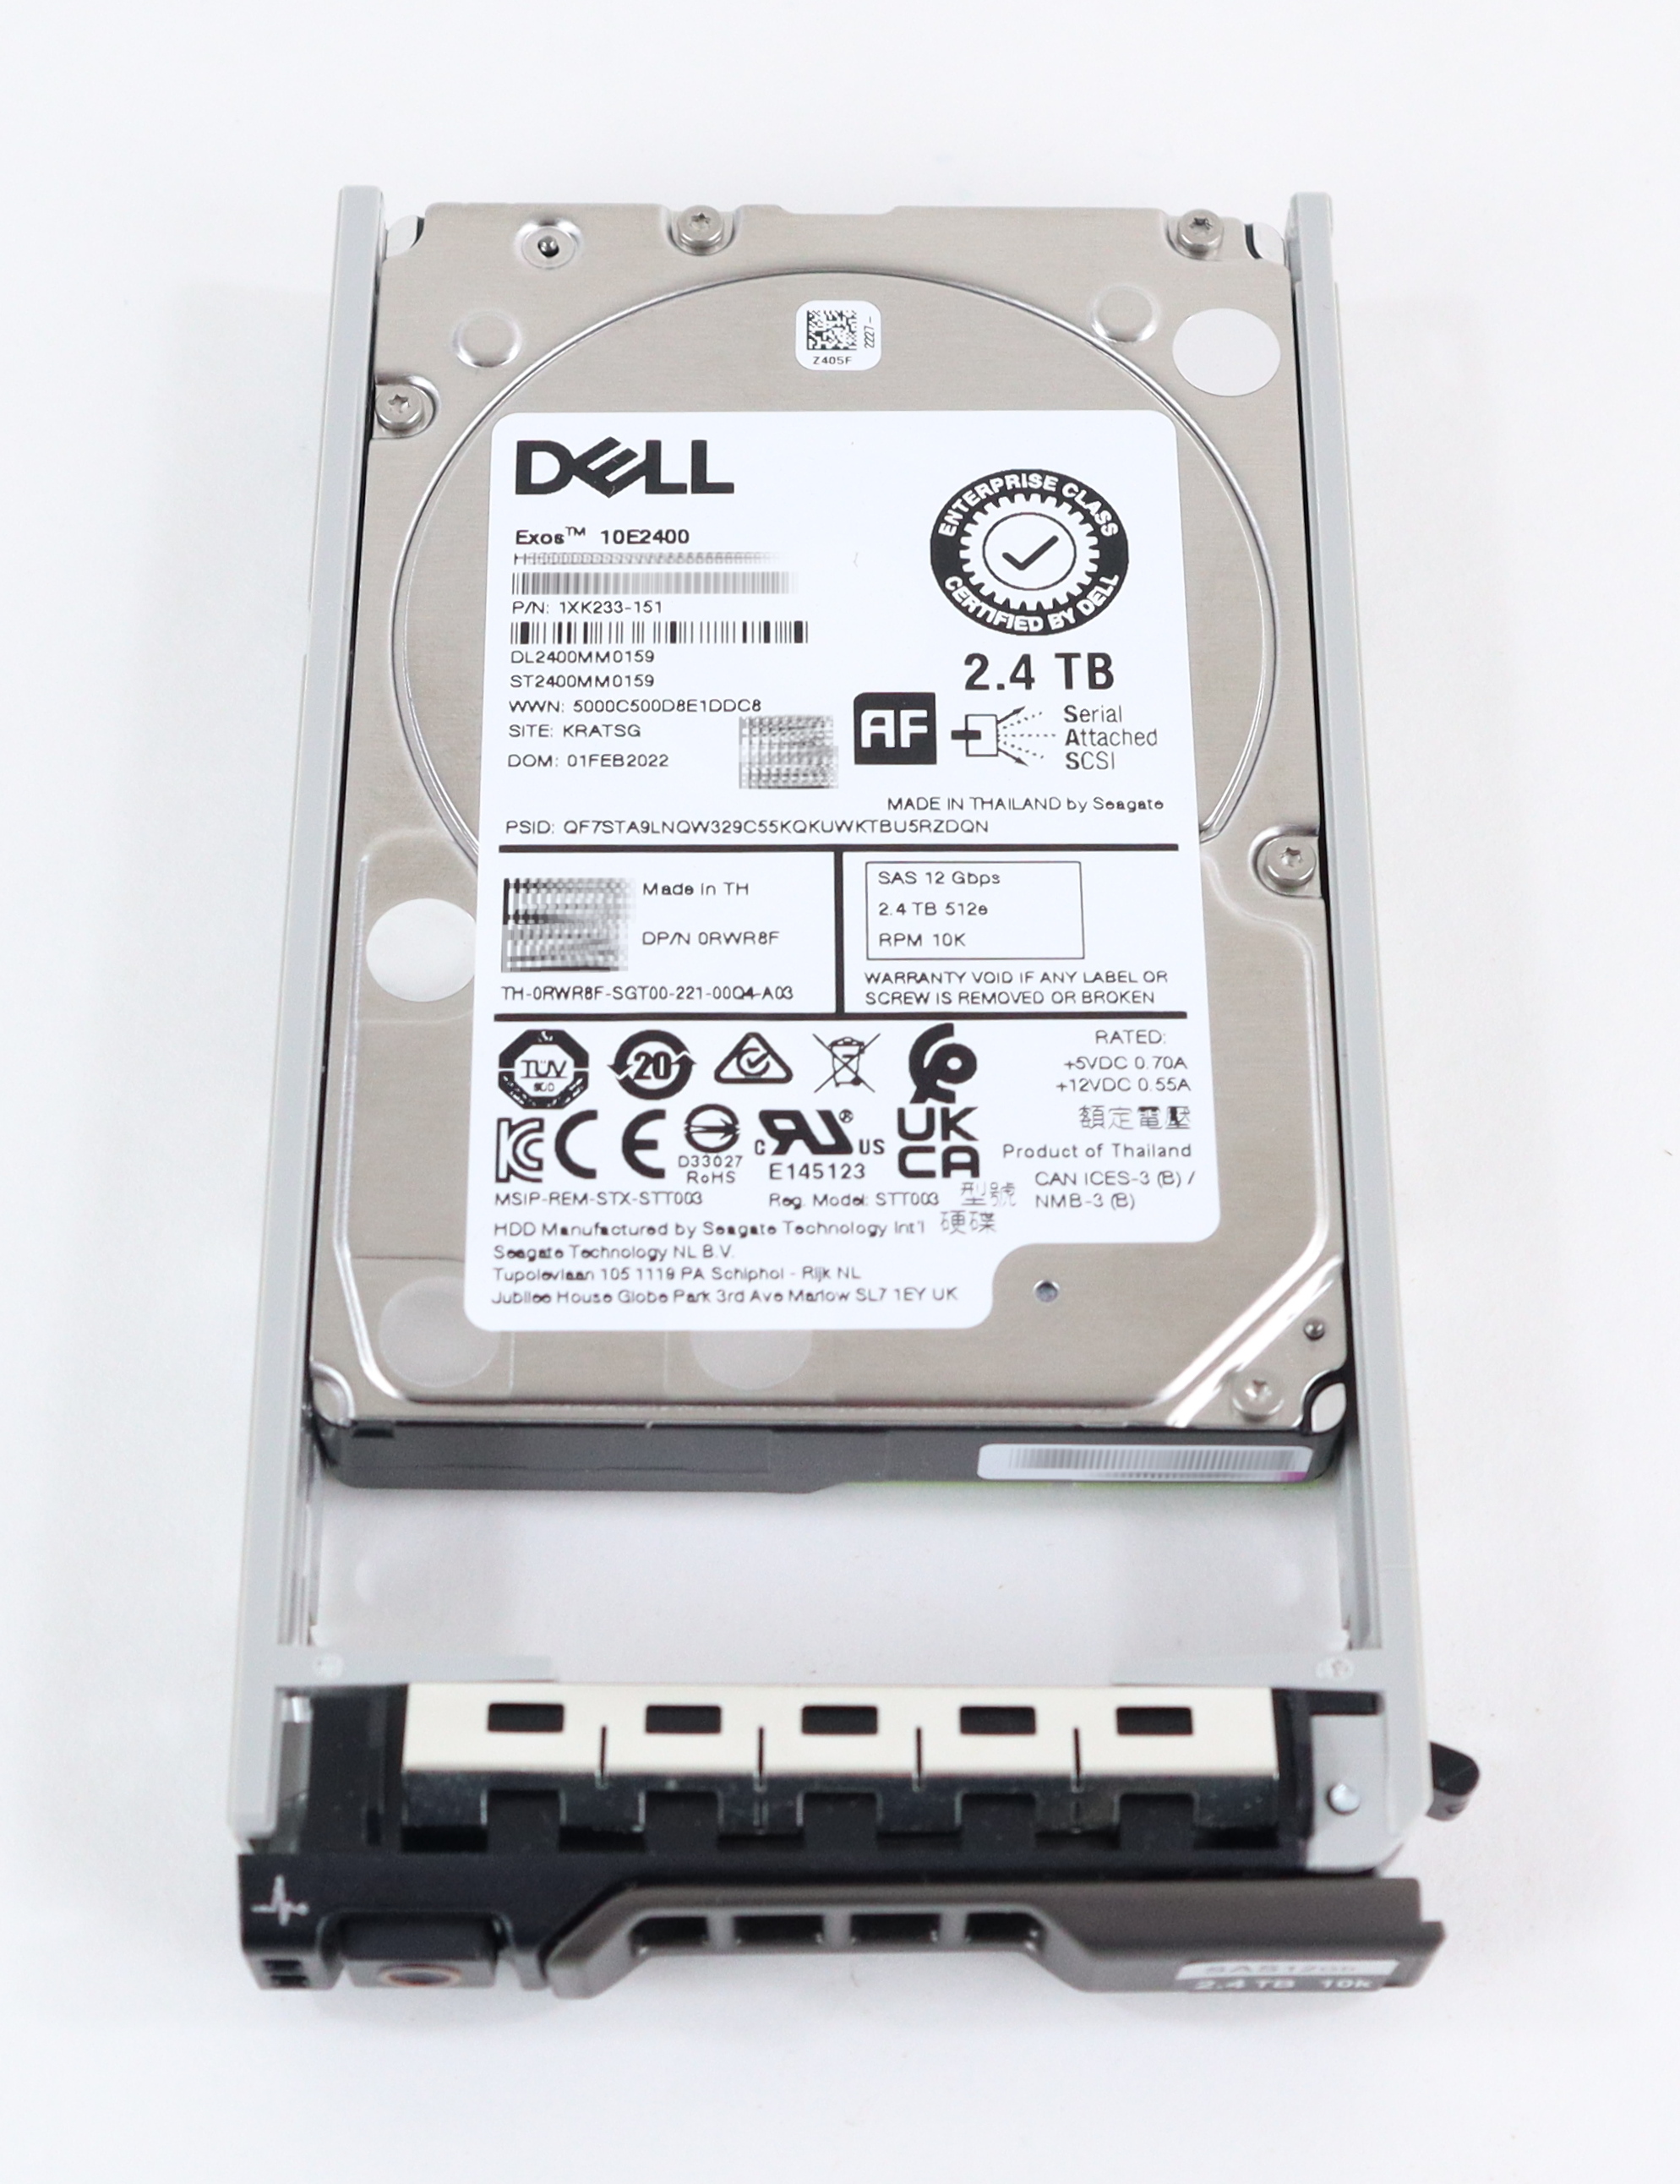 Dell Seagate 2.4TB Exos 10E2400 ST2400MM0159 SAS 2.5" 1XK233-151 RWR8F 400-AUQX